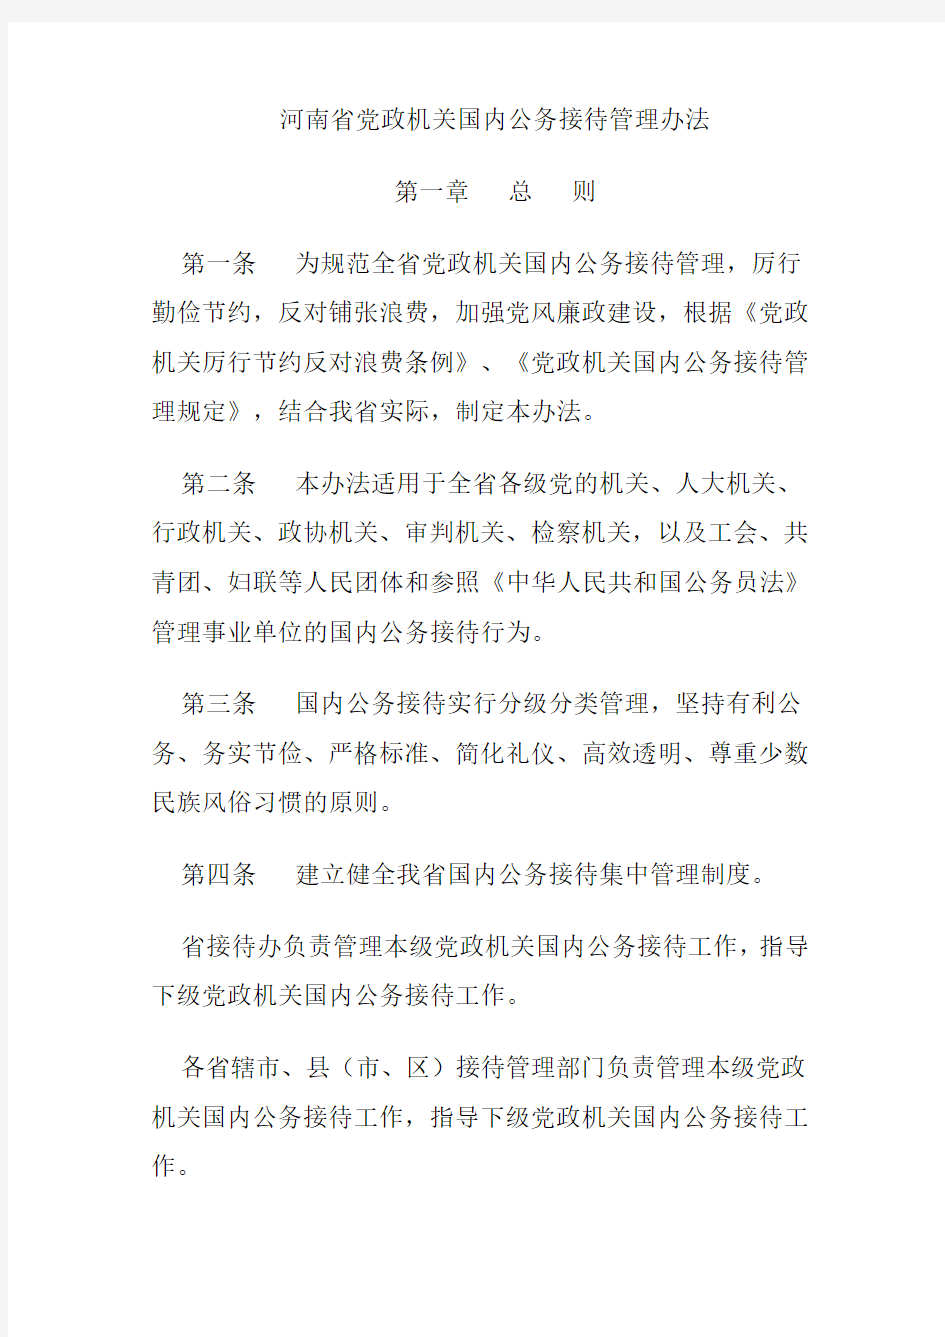 河南省党政机关国内公务接待管理办法